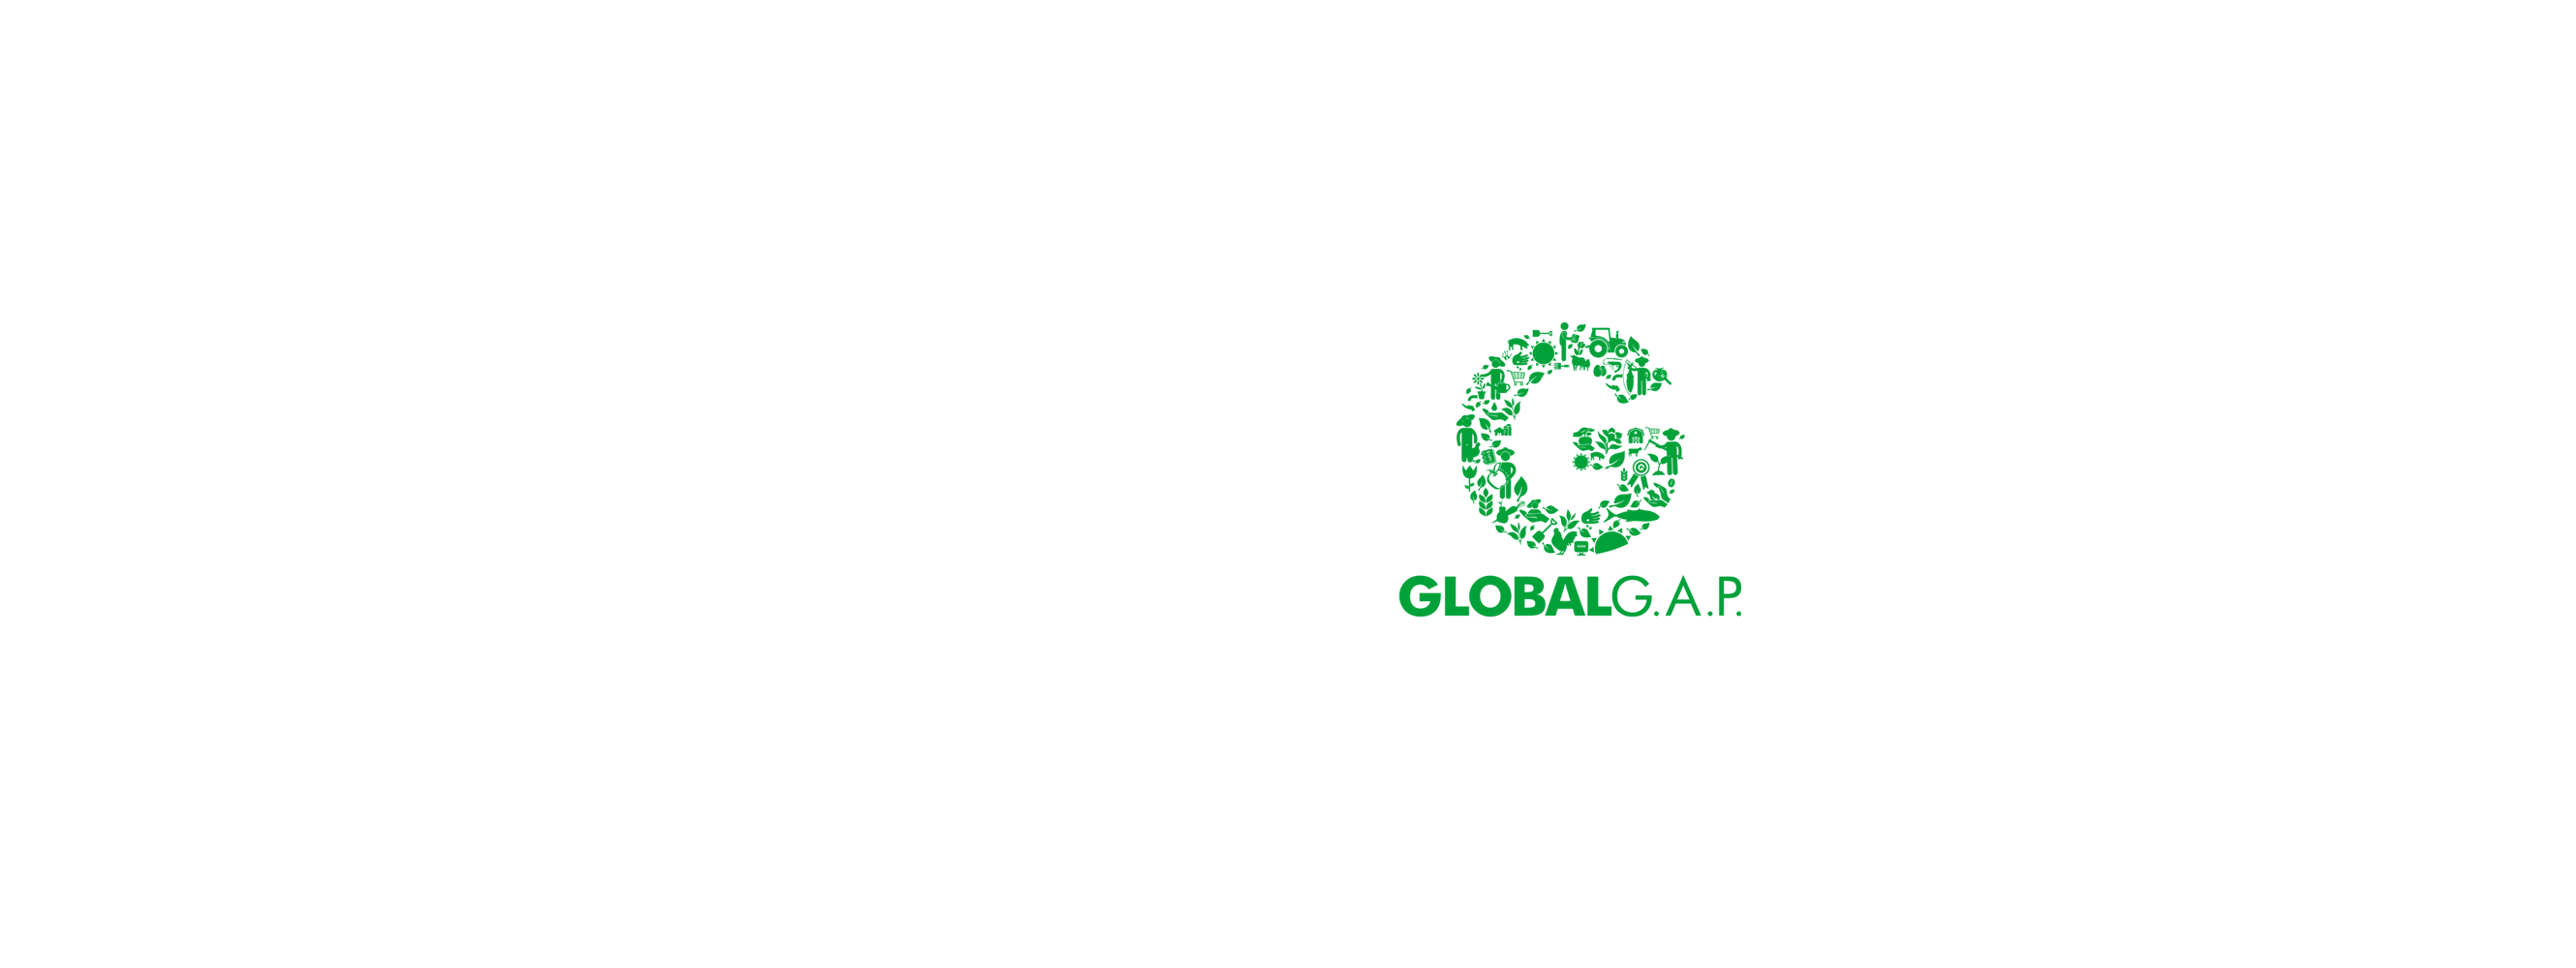 Global Gap